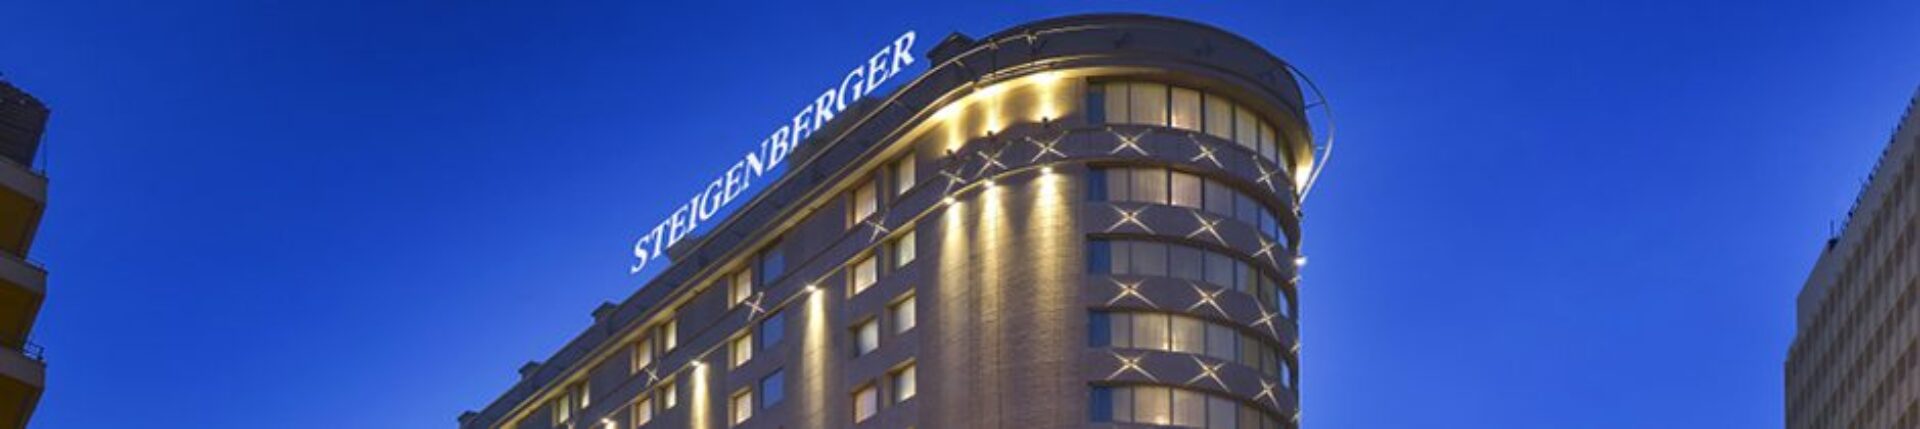 steigenberger hotel cairo banner